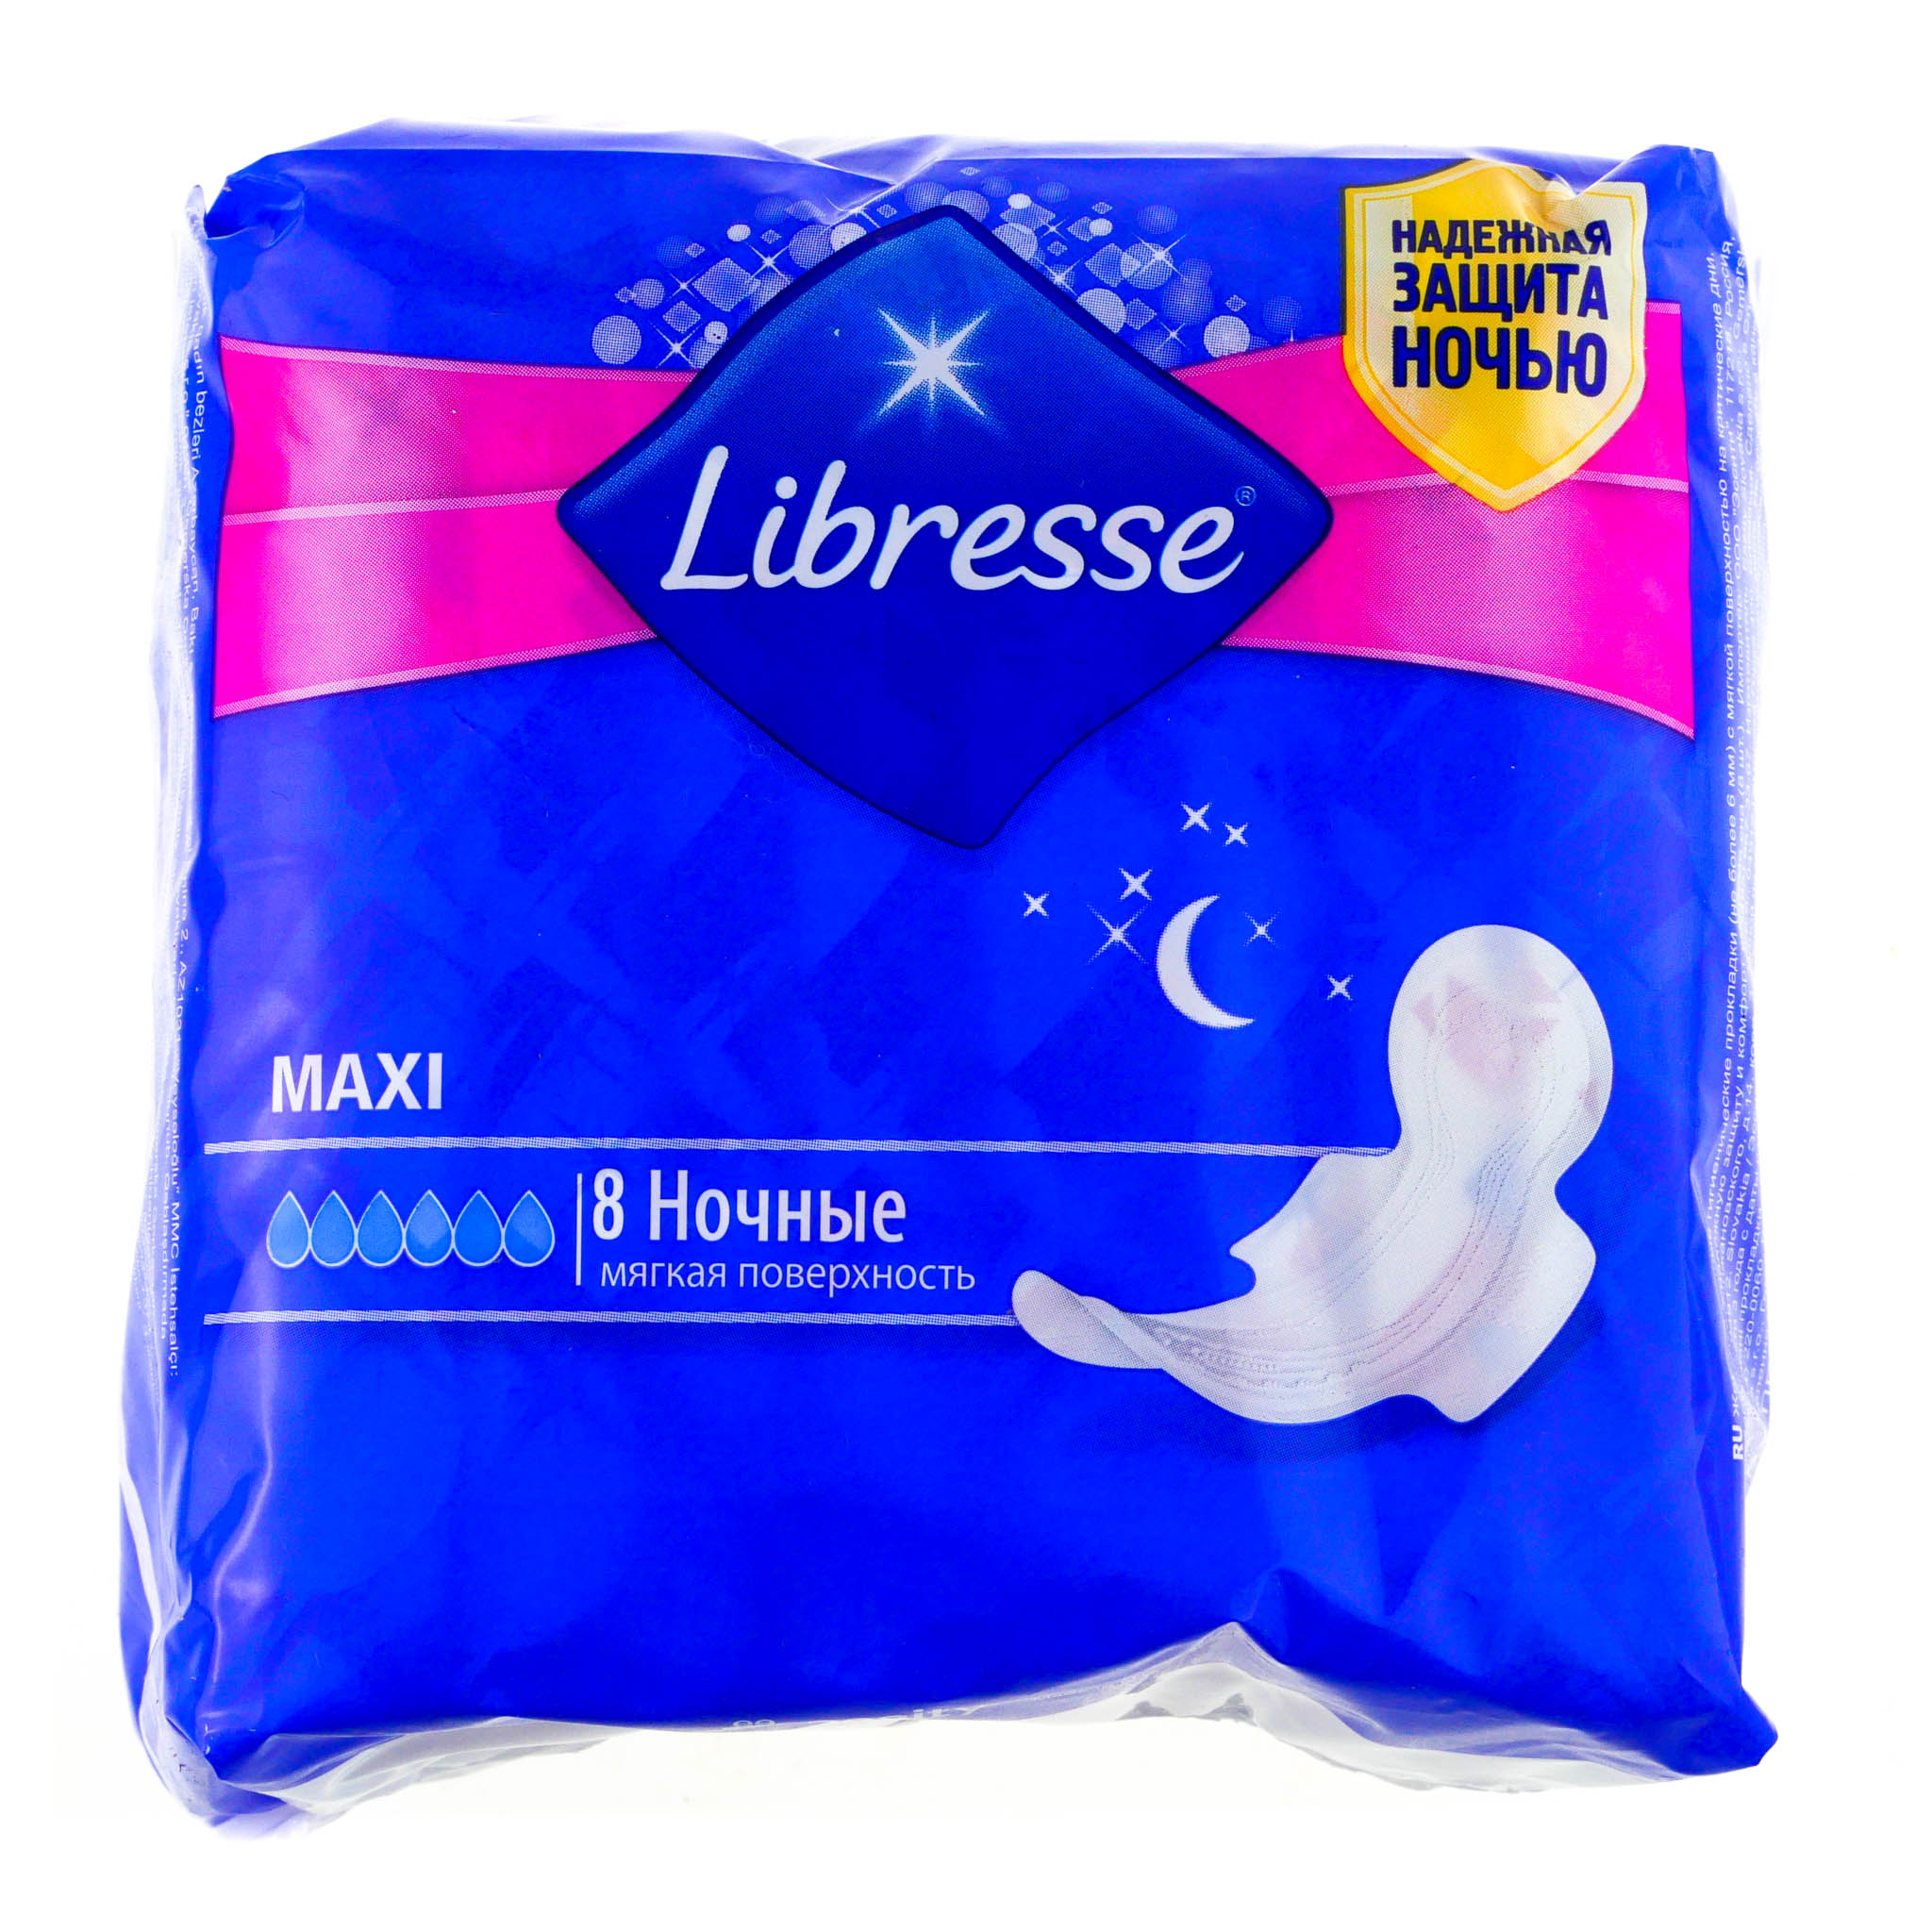 Гигиенические прокладки ночные. Libresse прокладки ночные Maxi 8 шт. Libresse Maxi ночные. Прокладки Либресс ночные макси. Libresse прокладки Maxi ночные.